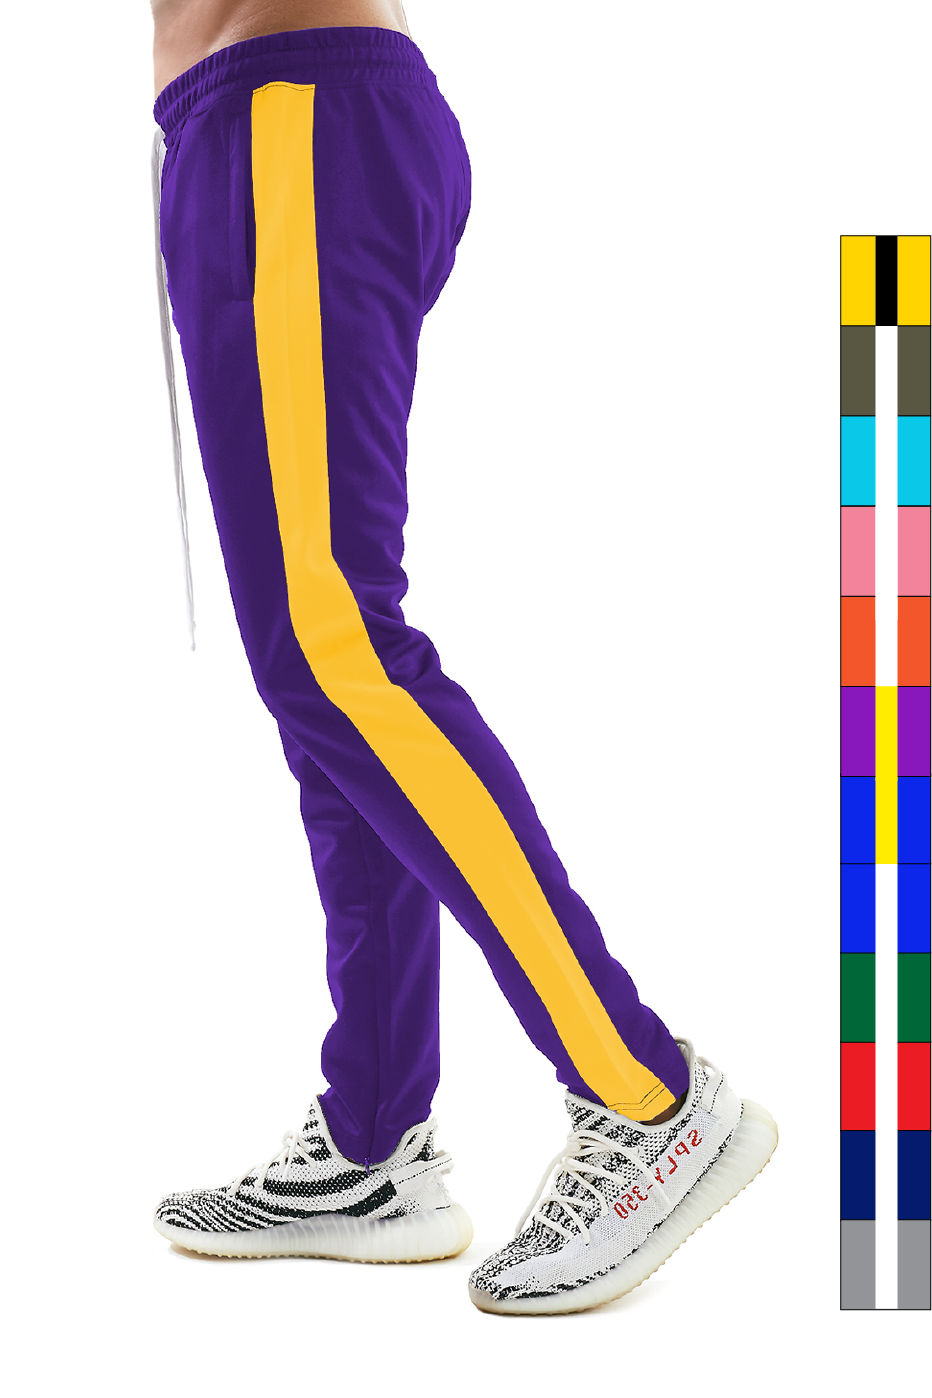 At sige sandheden Måling forstørrelse BLEECKER and MERCER P500 NEW Slim Fit Track Pants with Zipper Pockets -  Colors